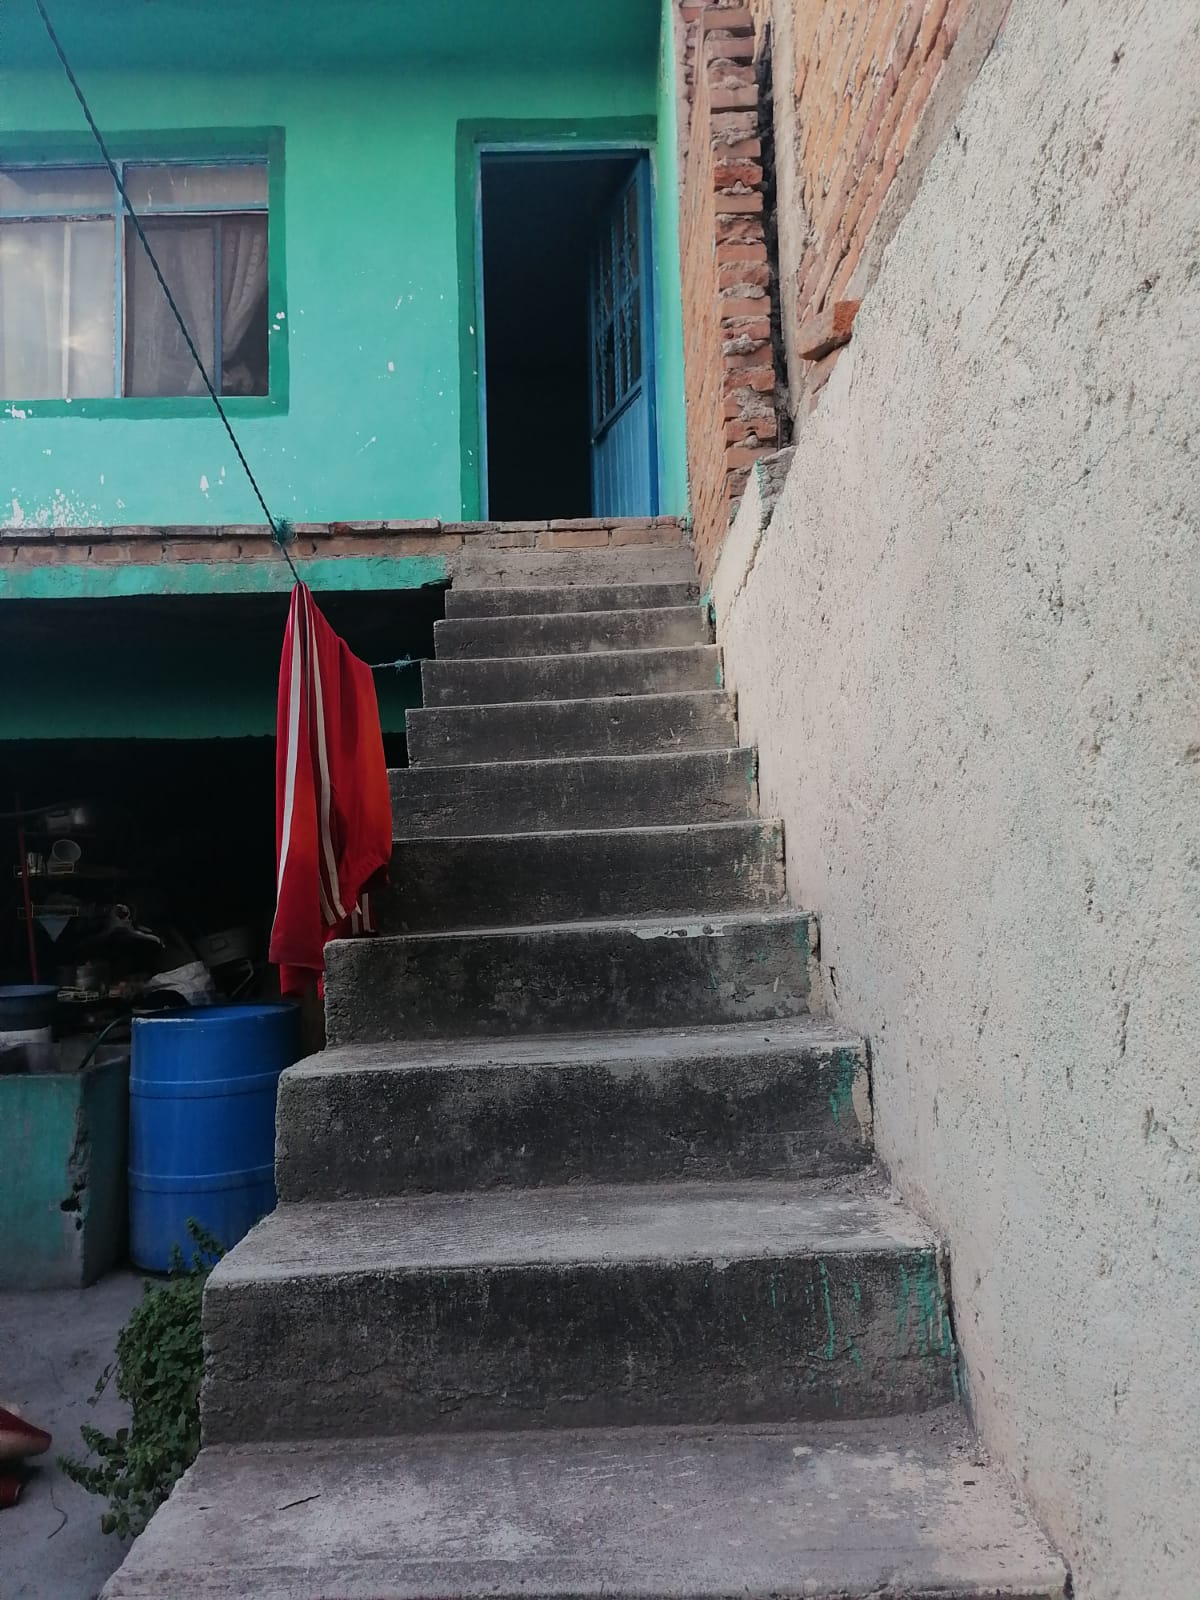 Hombre De 45 Años Muere Al Caer De La Escalera En Su Casa Viva La Noticia Durango 2722